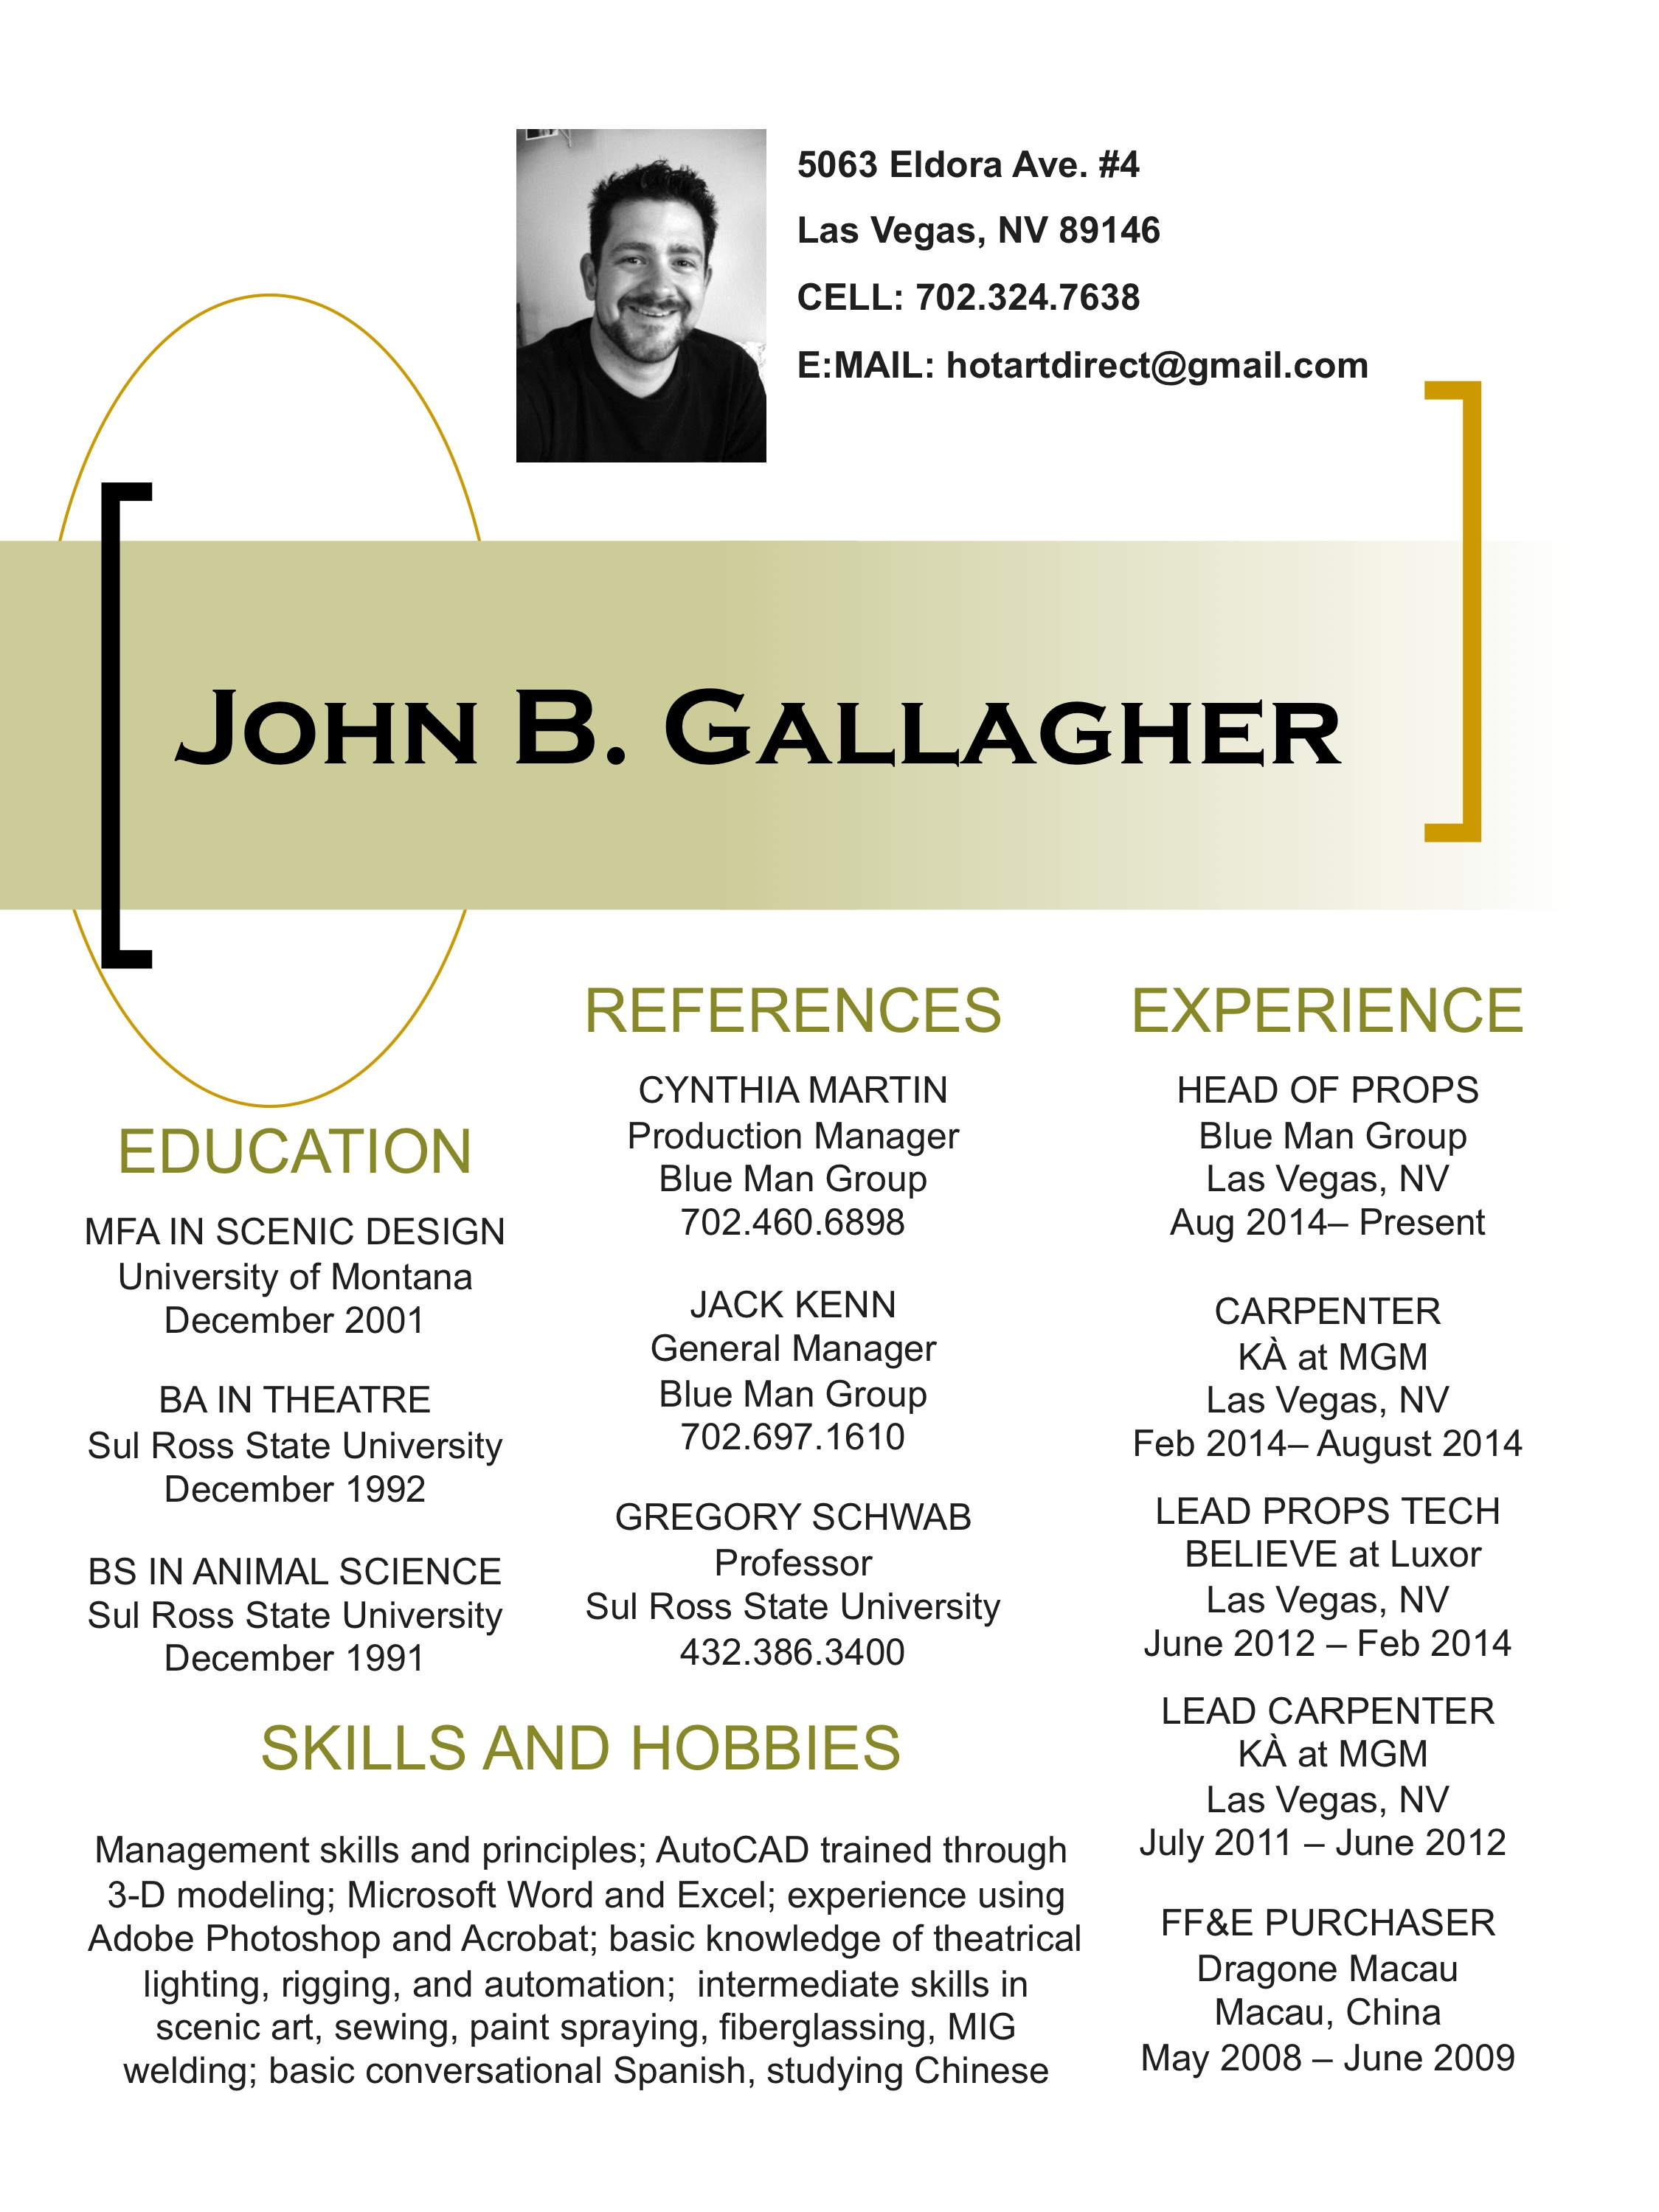 John Gallagher Resume JPG